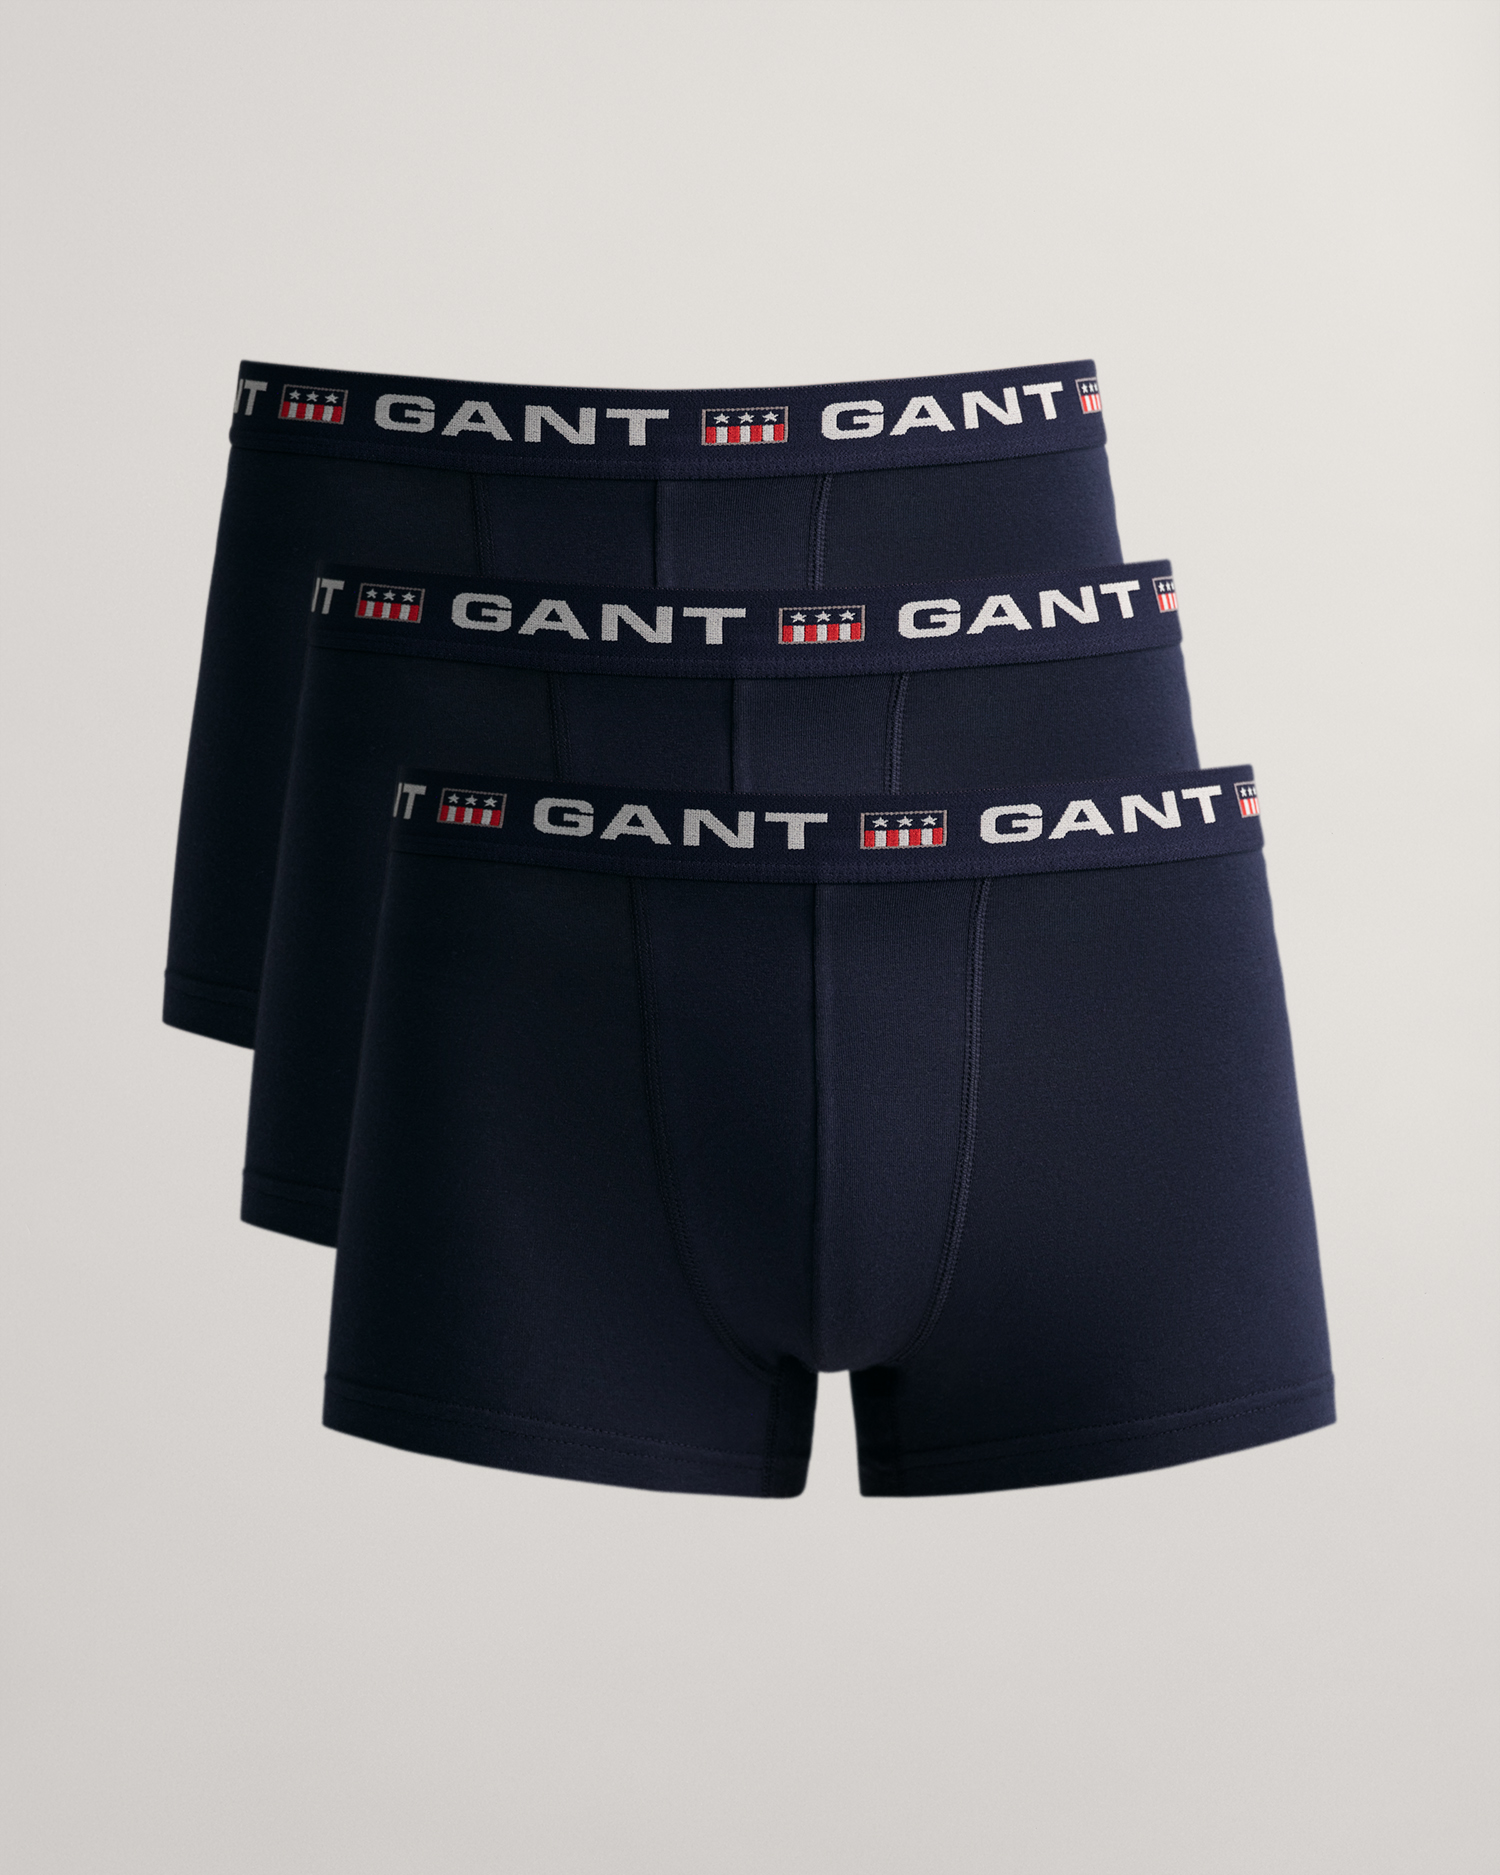 Gant 3-Pack Retro Shield Trunks